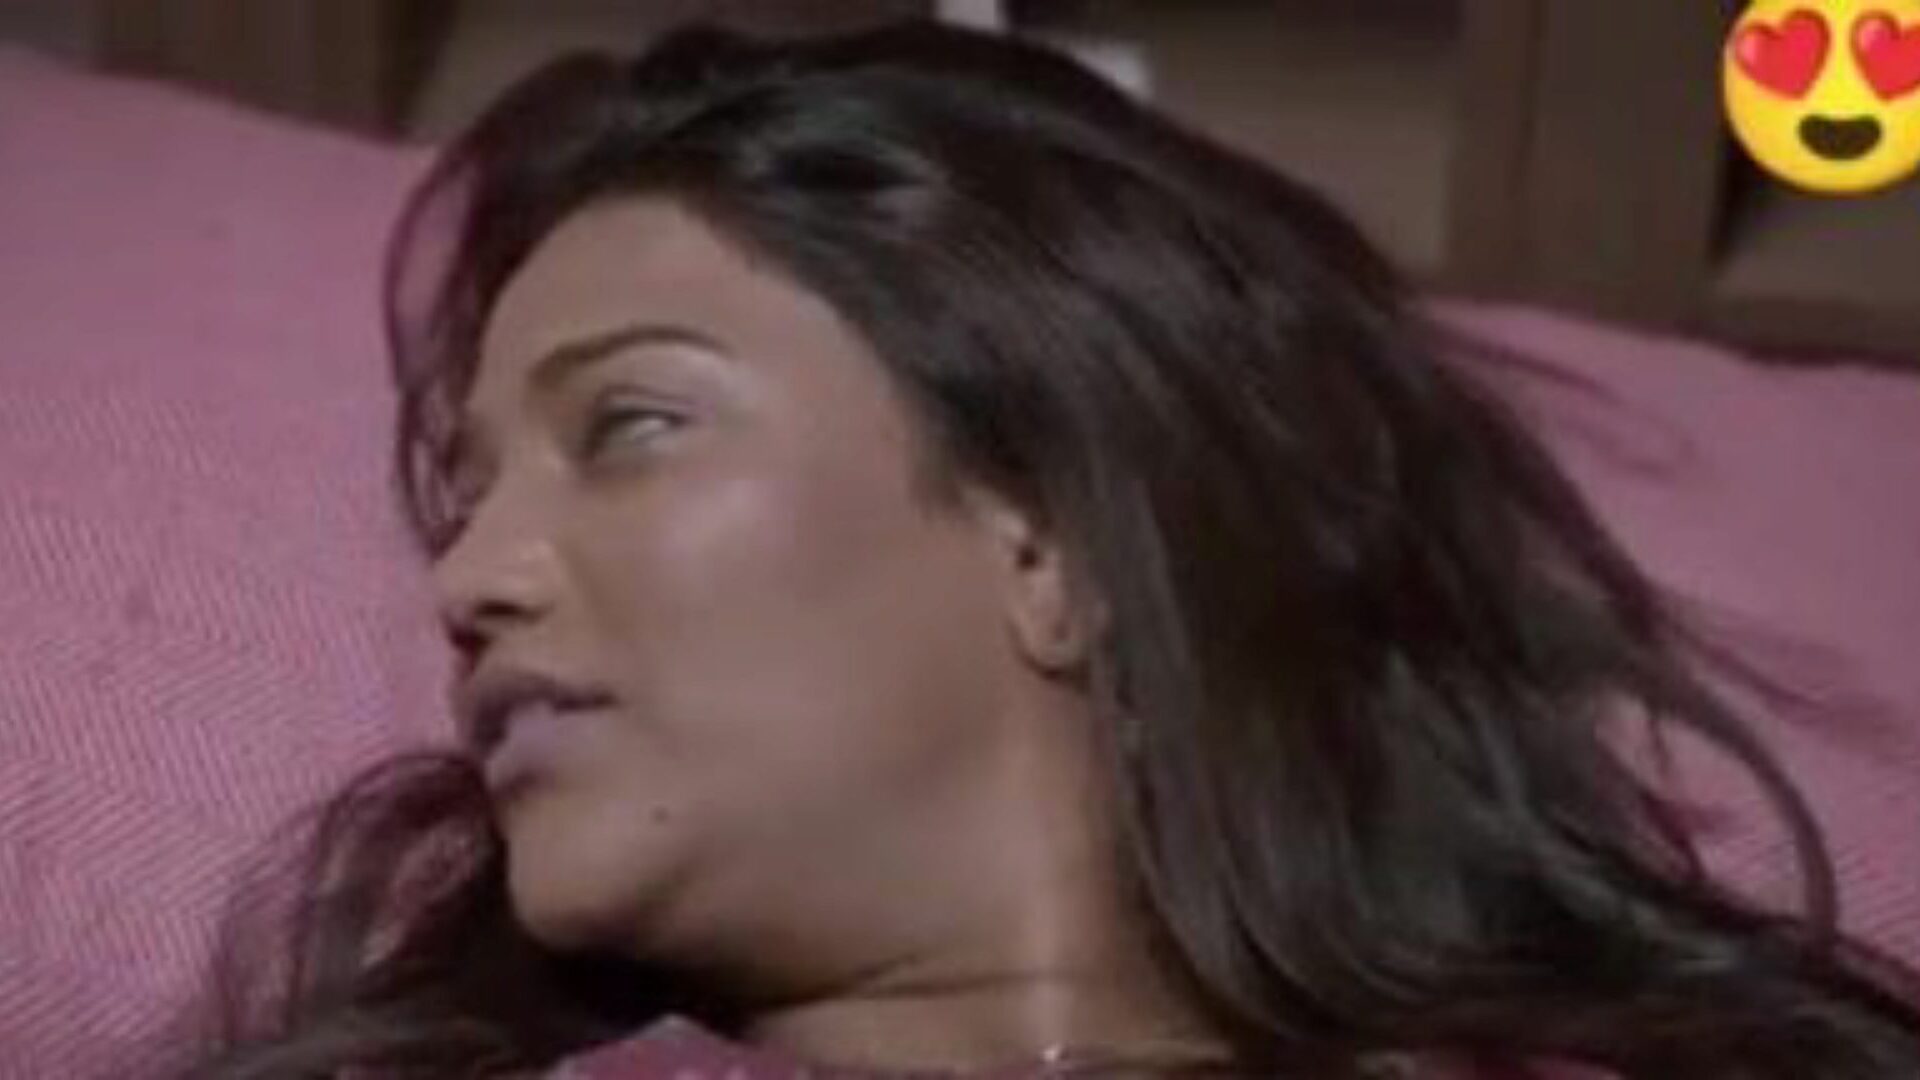 ダブルダマカサリーセックス、無料のインドのポルノda：xhamsterはxhamsterでダブルダマカサリーのセックスムービーを見る、たくさんの無料のインドの新しいセックスxxxとヒンディー語のポルノ映画シーンを備えた大規模な性交チューブウェブリソース